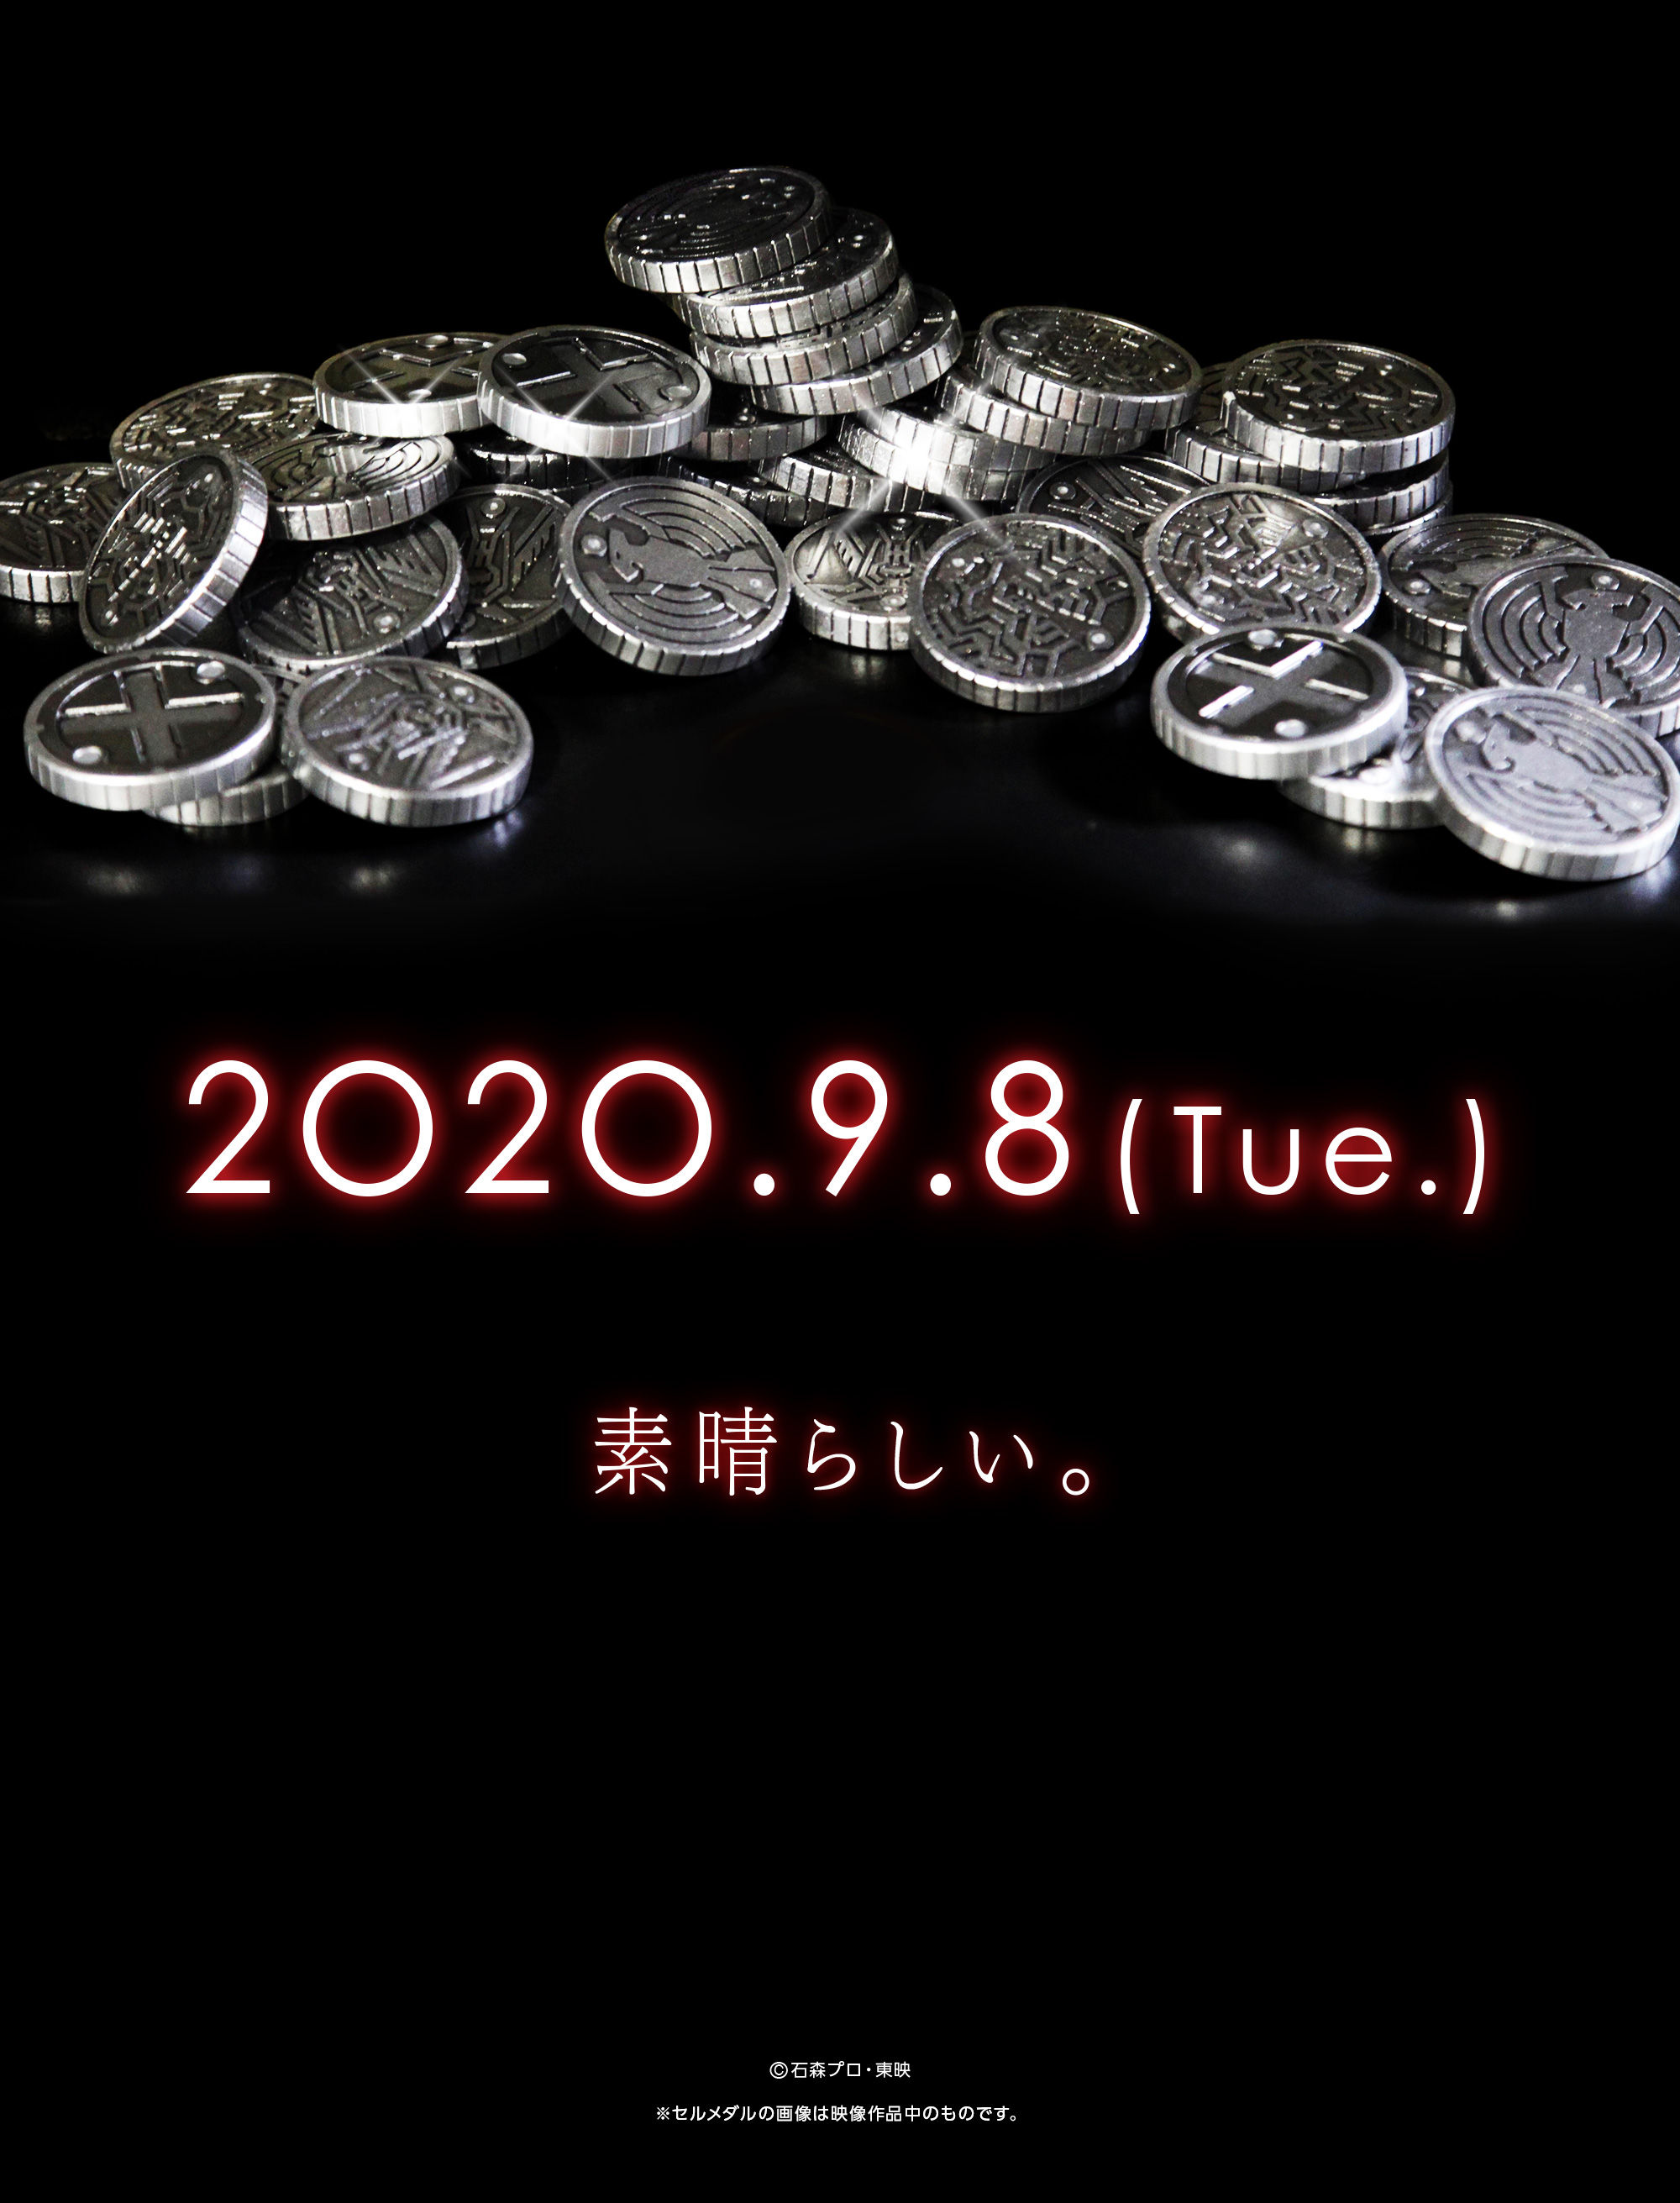 仮面ライダーオーズ』10周年記念 「CSM」セルメダル、コアメダルEXTRA 